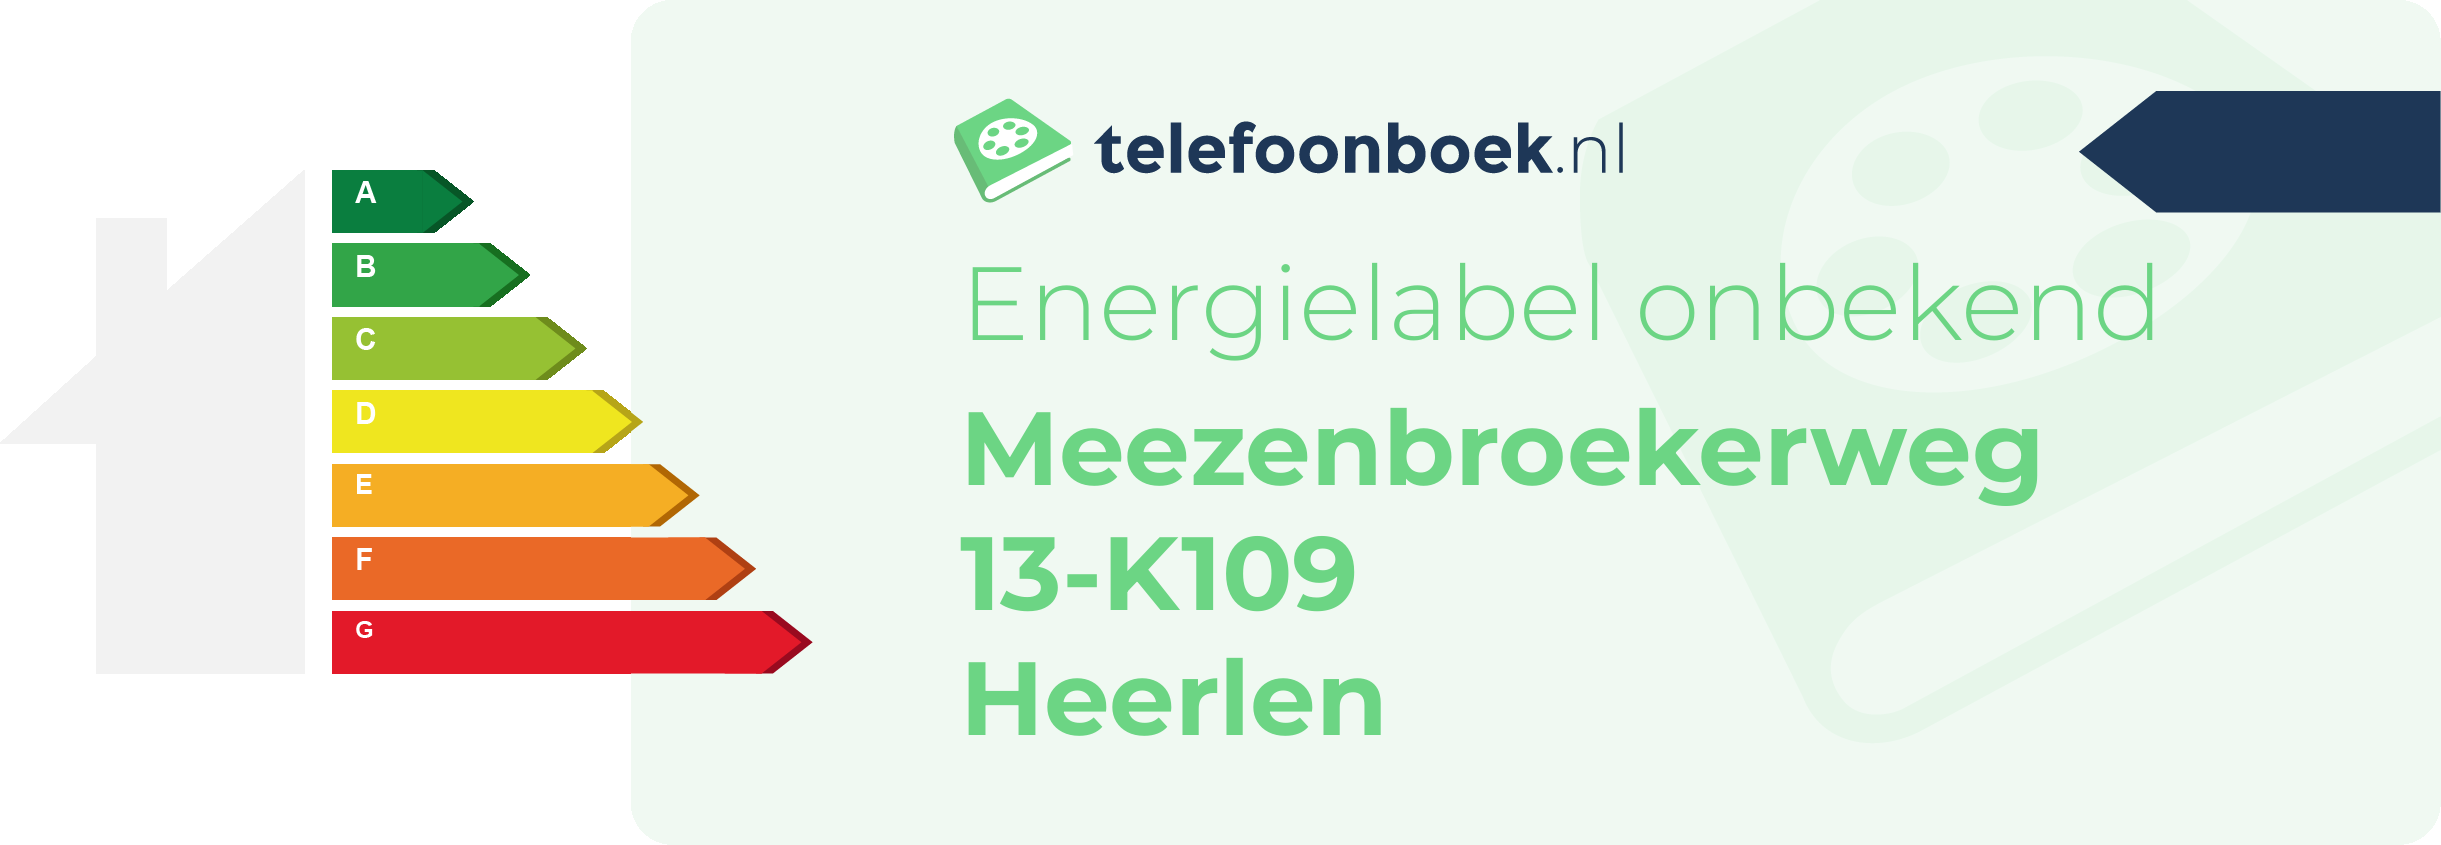 Energielabel Meezenbroekerweg 13-K109 Heerlen